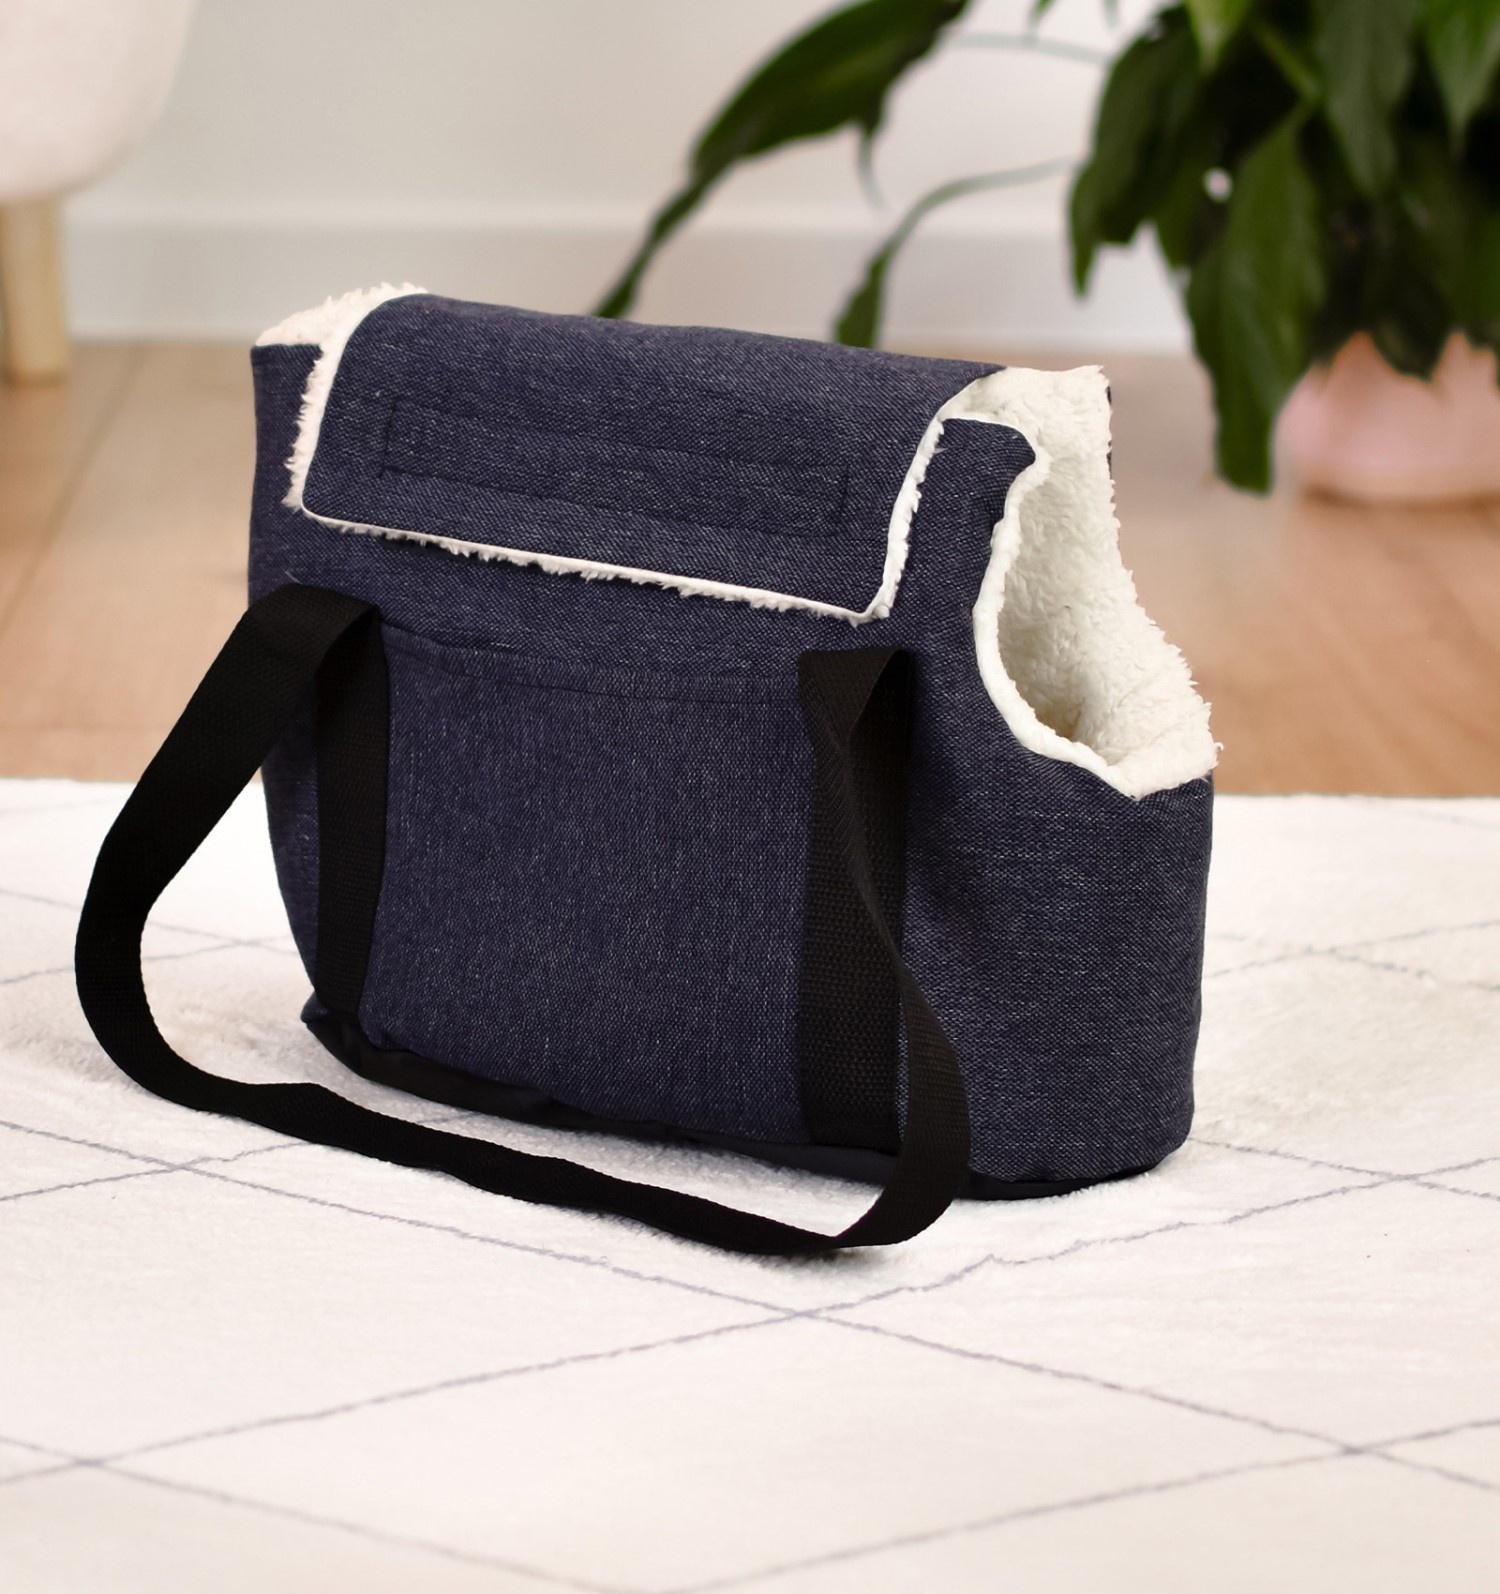 PETSHOP транспортировка PETSHOP транспортировка сумка-переноска утеплённая Билли с карманом, синяя (45х22х29 см)